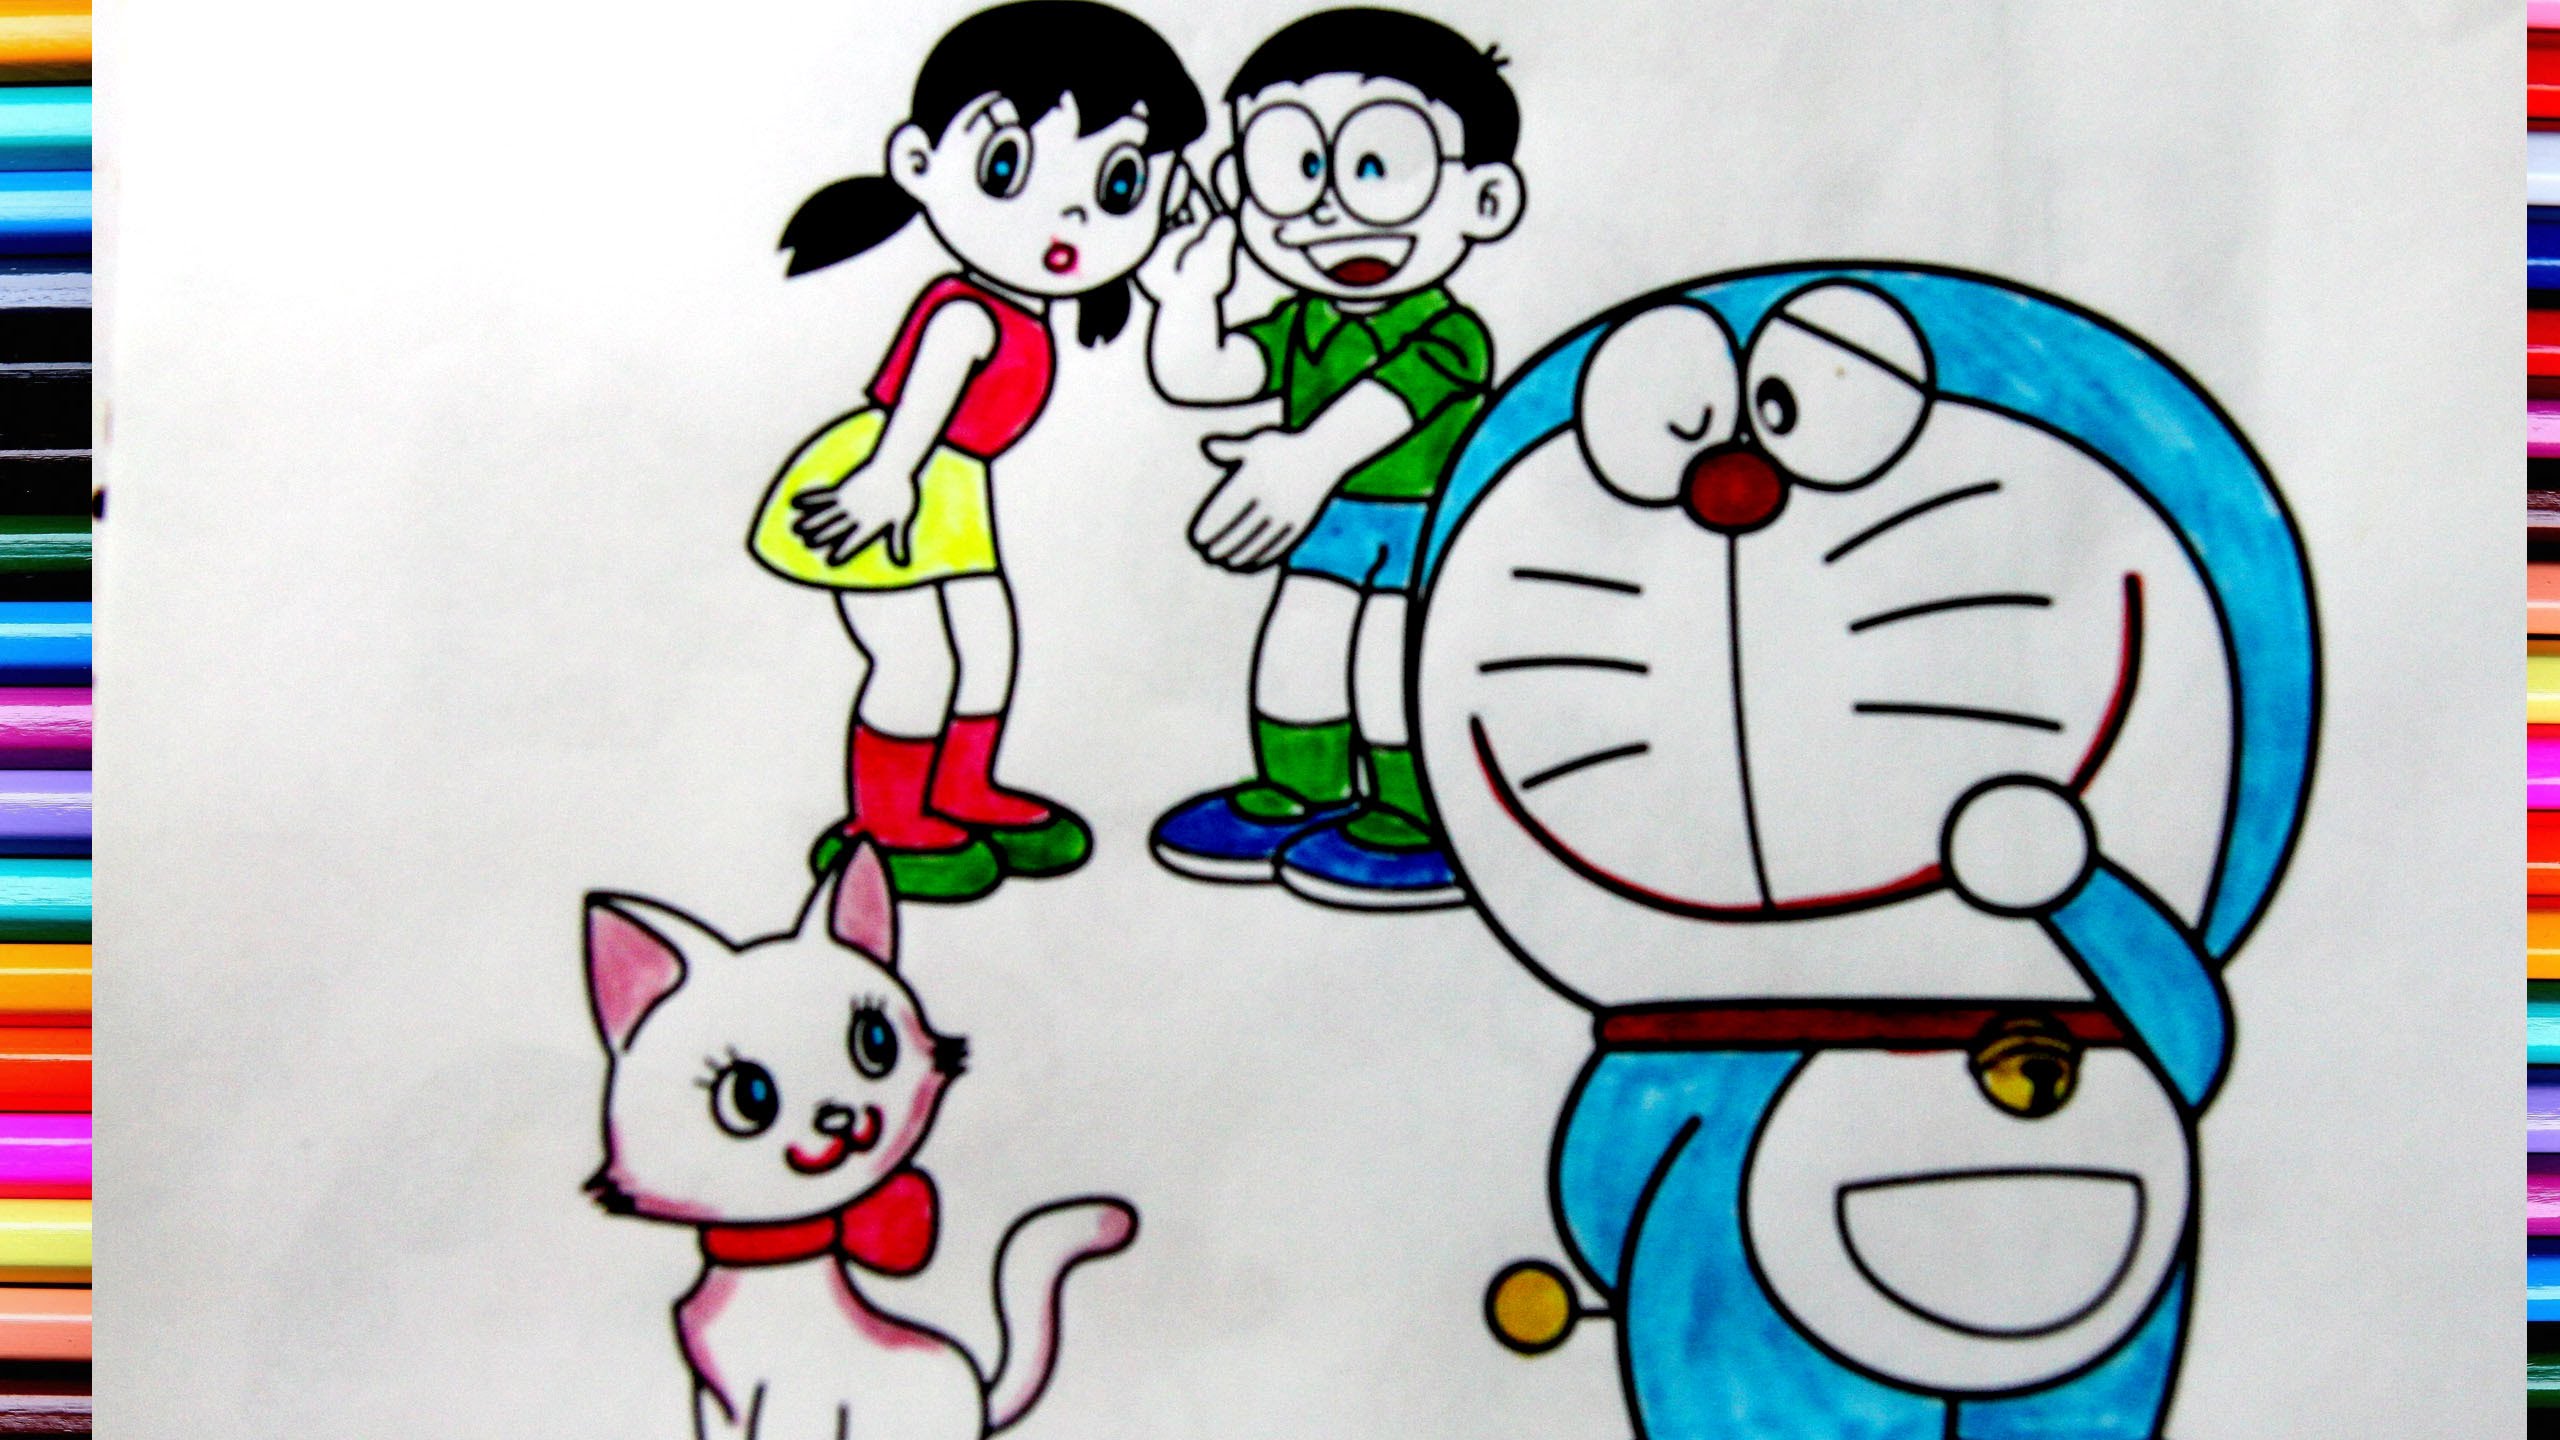 hình tô màu Nobita